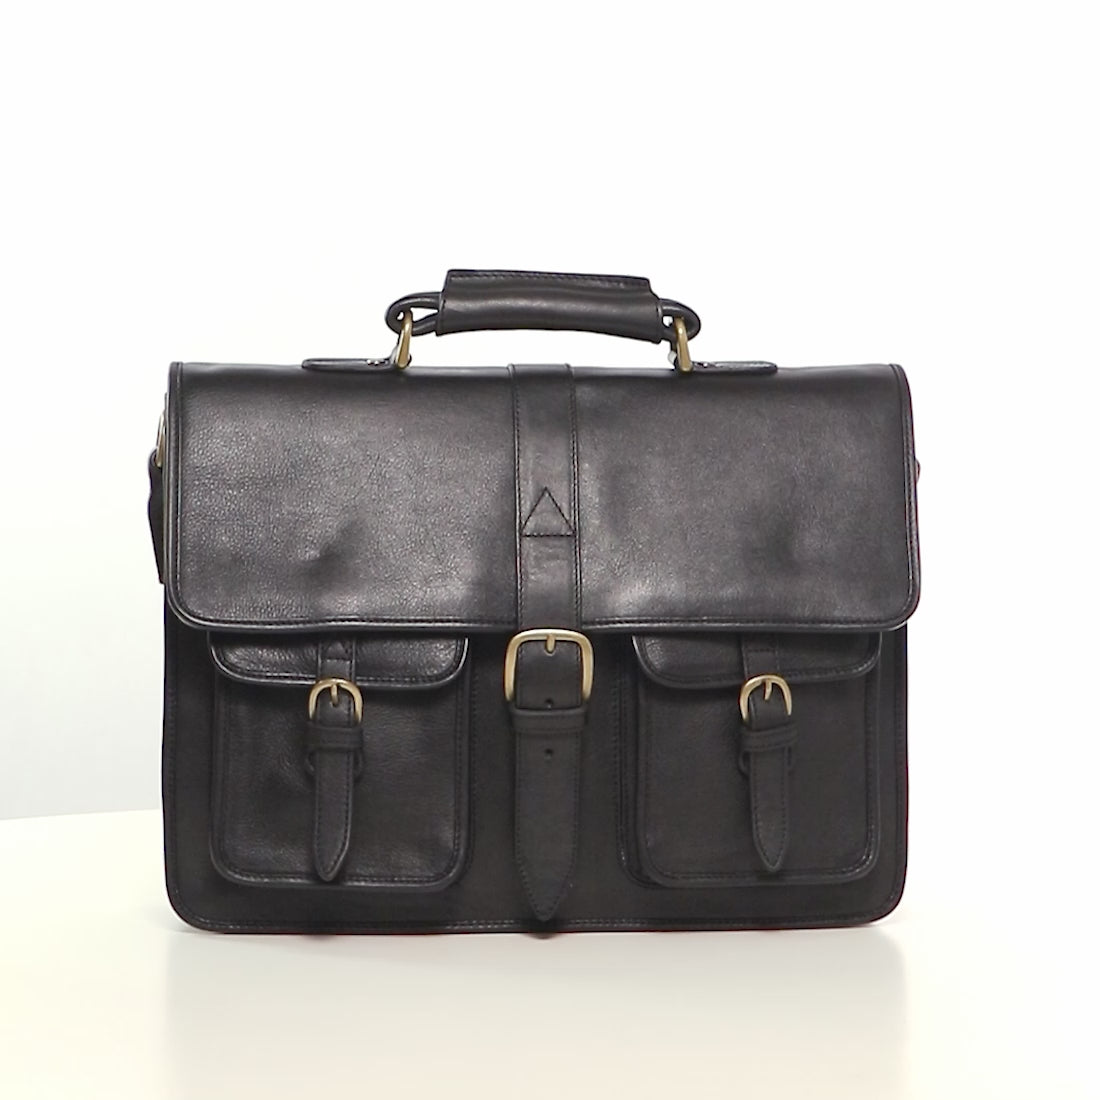 Buy Black Castello Briefcase Online - Hidesign